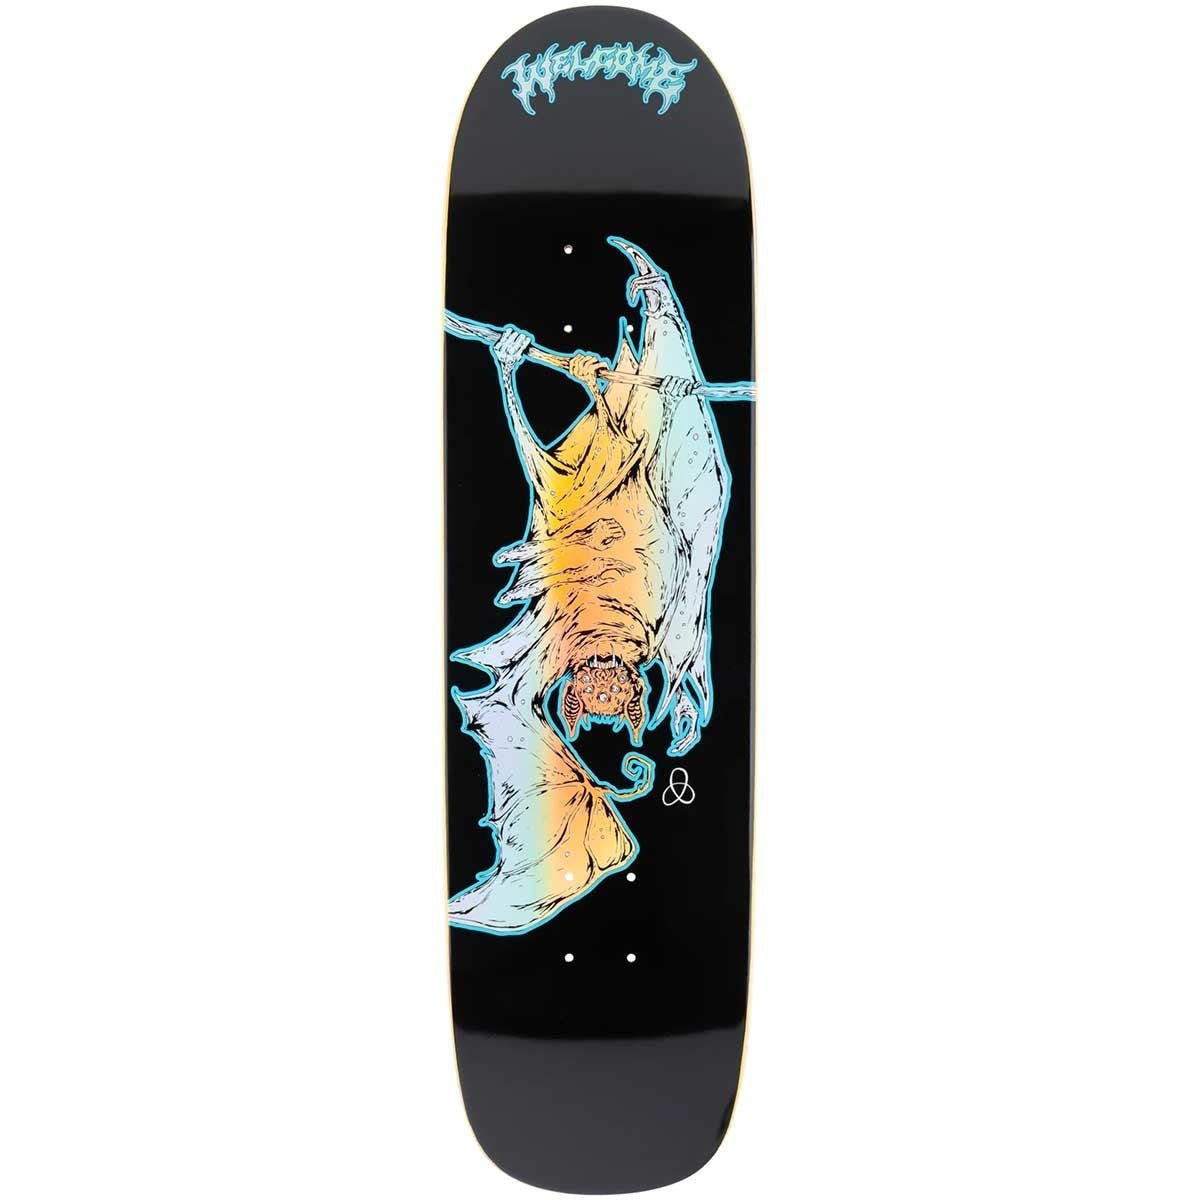 WLCM Infinitely Batty on Son of Planchette 8.38" (Black/Prism Foil) - Skateboard - Decks